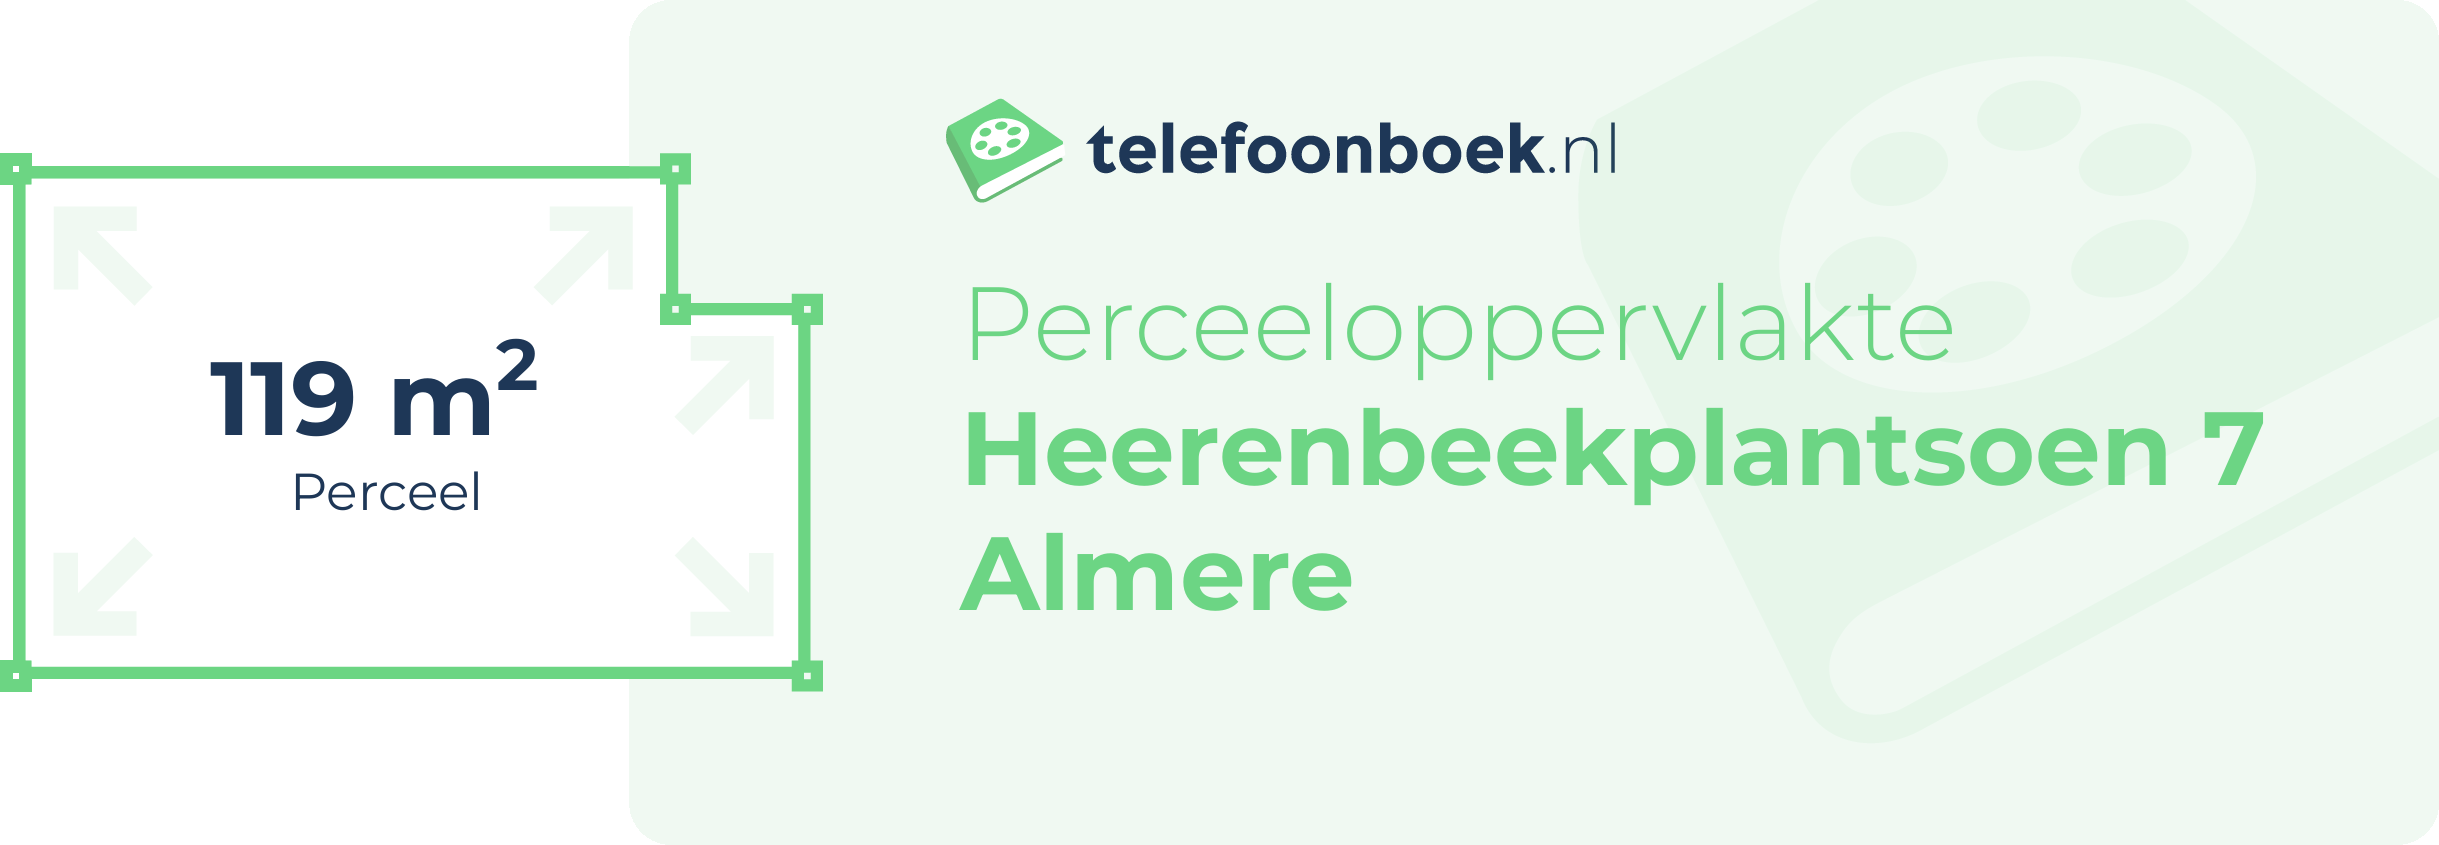 Perceeloppervlakte Heerenbeekplantsoen 7 Almere